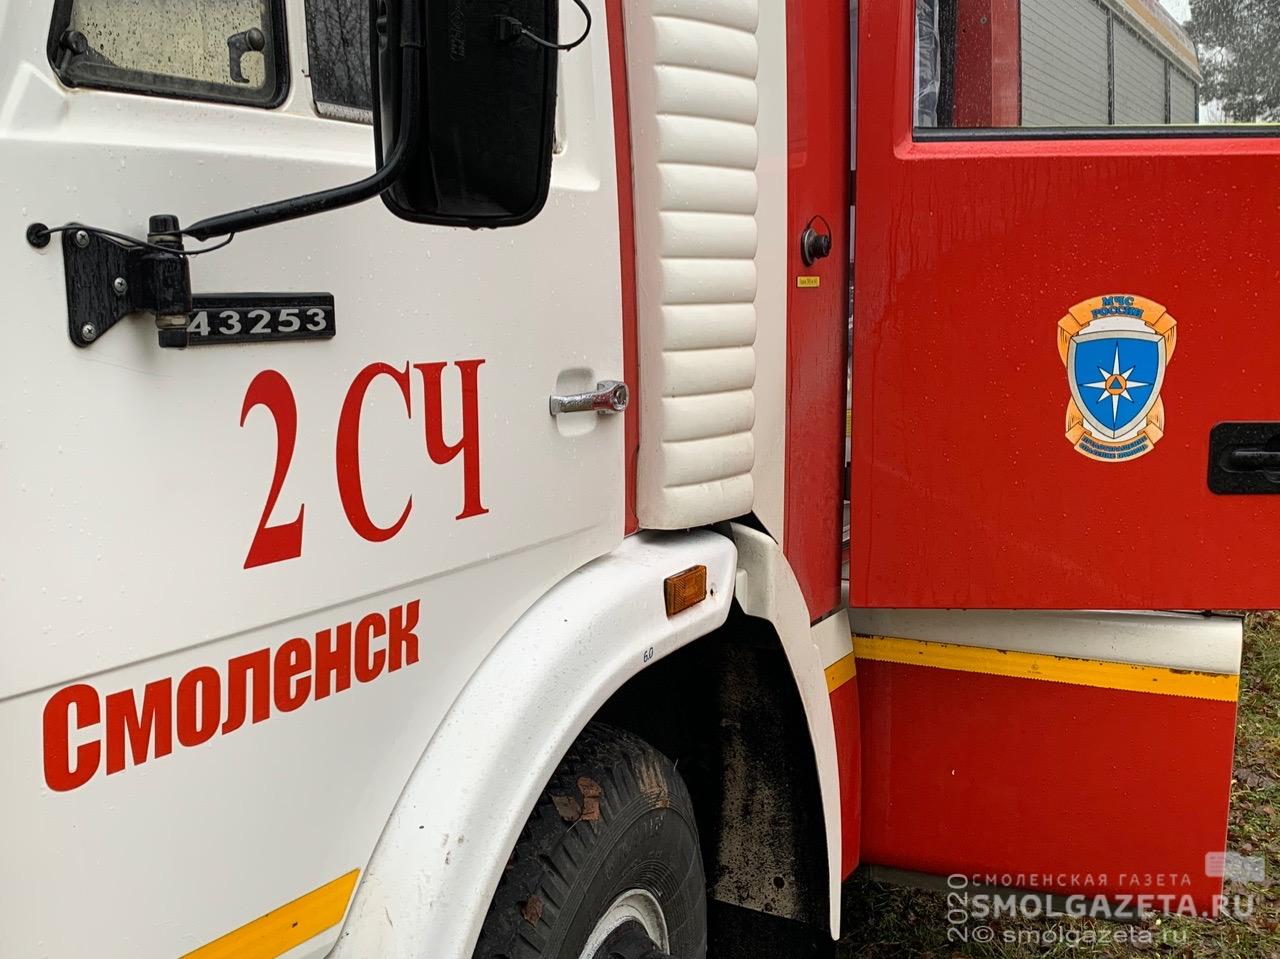 641 подразделение добровольной пожарной охраны зарегистрировано в Смоленской области